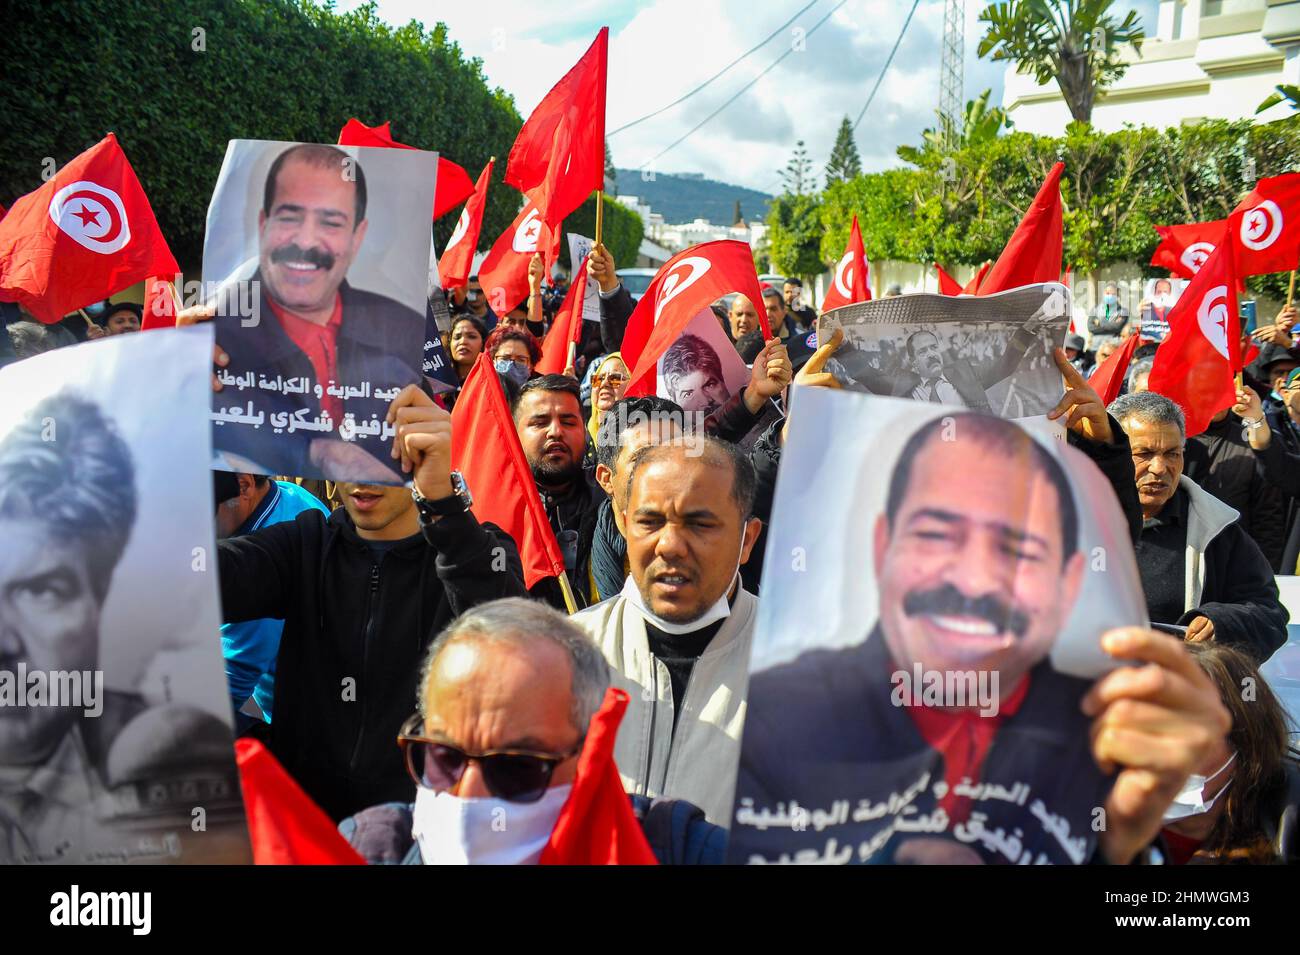 12 de febrero de 2022: Gran Túnez, Túnez. 12 de febrero de 2022. El comité de defensa de Chokri Belaid y Mohamed Brahmi se manifiestan frente a la casa del líder de Ennahda, Rached Ghannouchi, en el distrito de El Ghazela, en la ciudad tunecina de Ariana. Los líderes políticos de la oposición Chokri Belaid y Mohamed Brahmi fueron fusilados en circunstancias similares en 2013 en Túnez. Desde entonces Ennahda siempre ha negado cualquier participación en sus asesinatos y ha rechazado las acusaciones de obstaculizar las investigaciones de sus asesinatos (Credit Image: © Hasan mrad/IMAGESLIVE via ZUMA Press Wire) Foto de stock